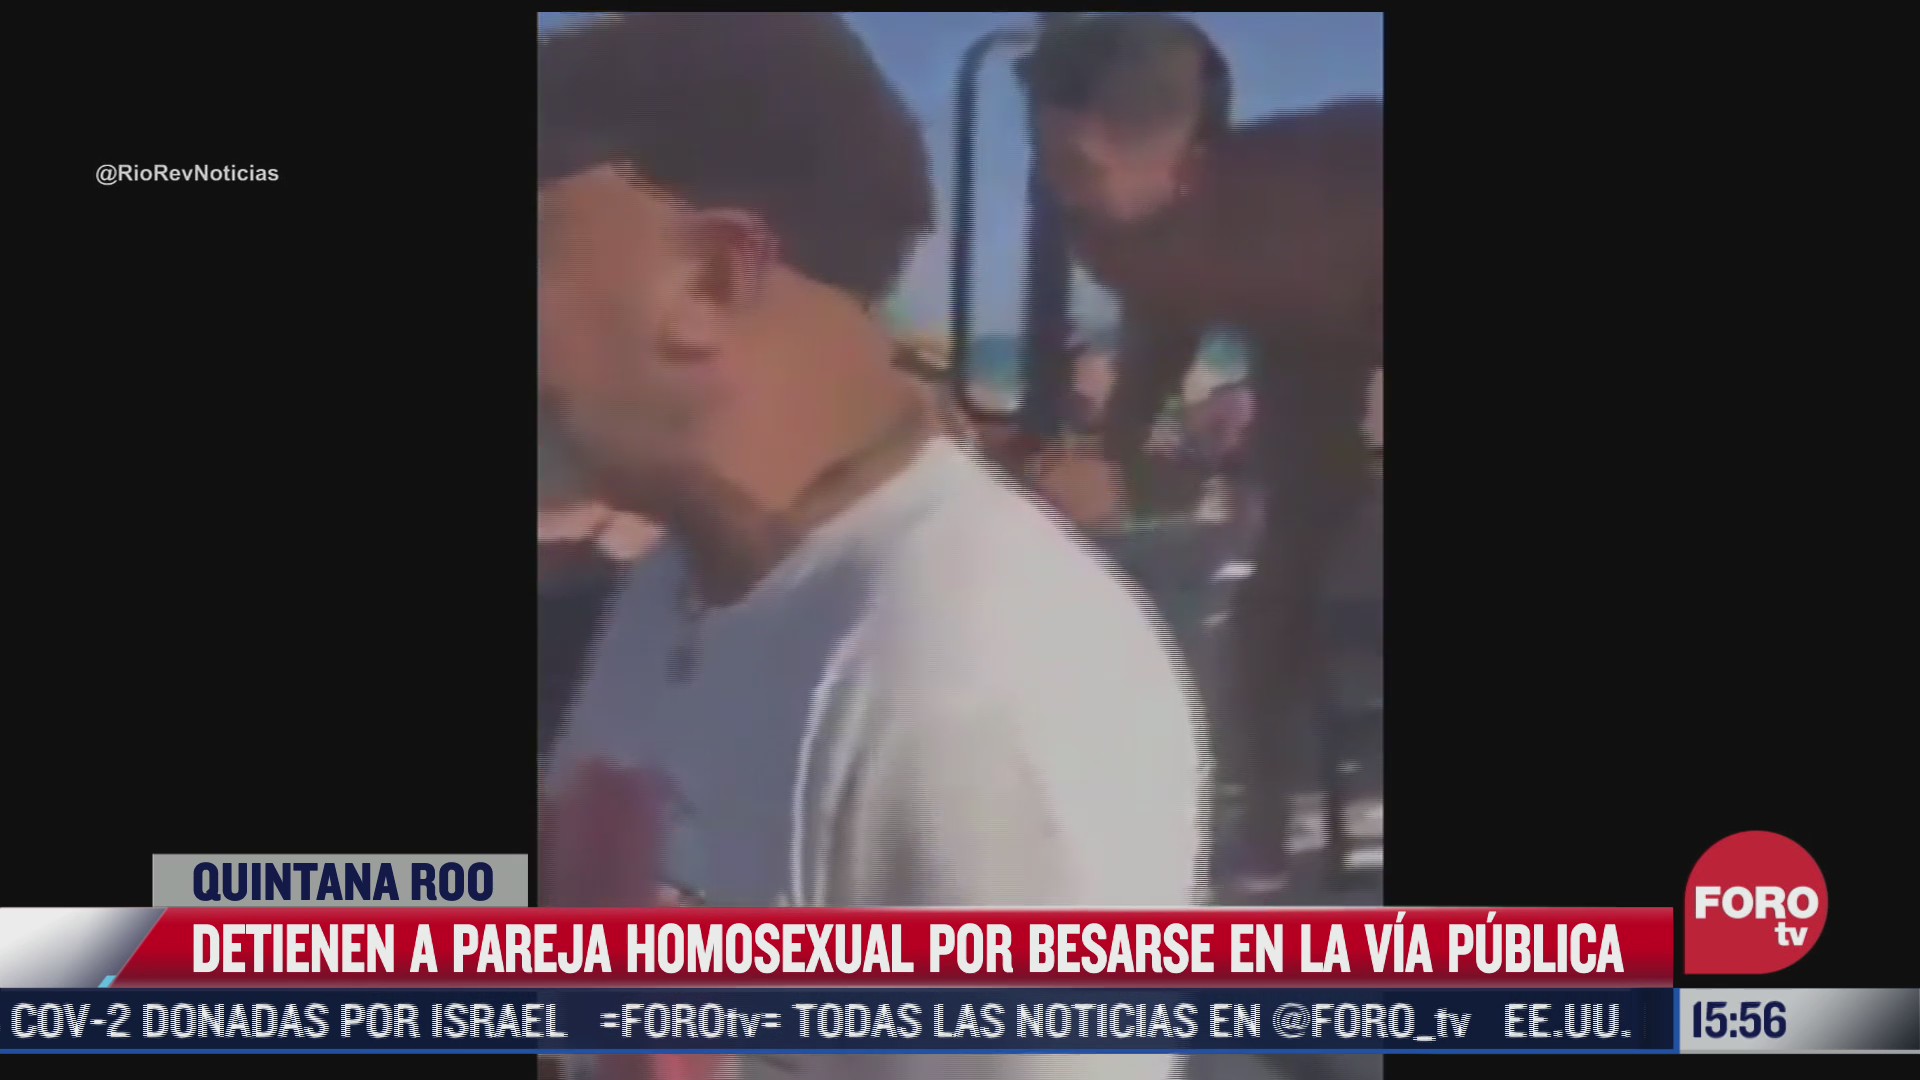 policias detienen a pareja homosexual por besarse en via publica